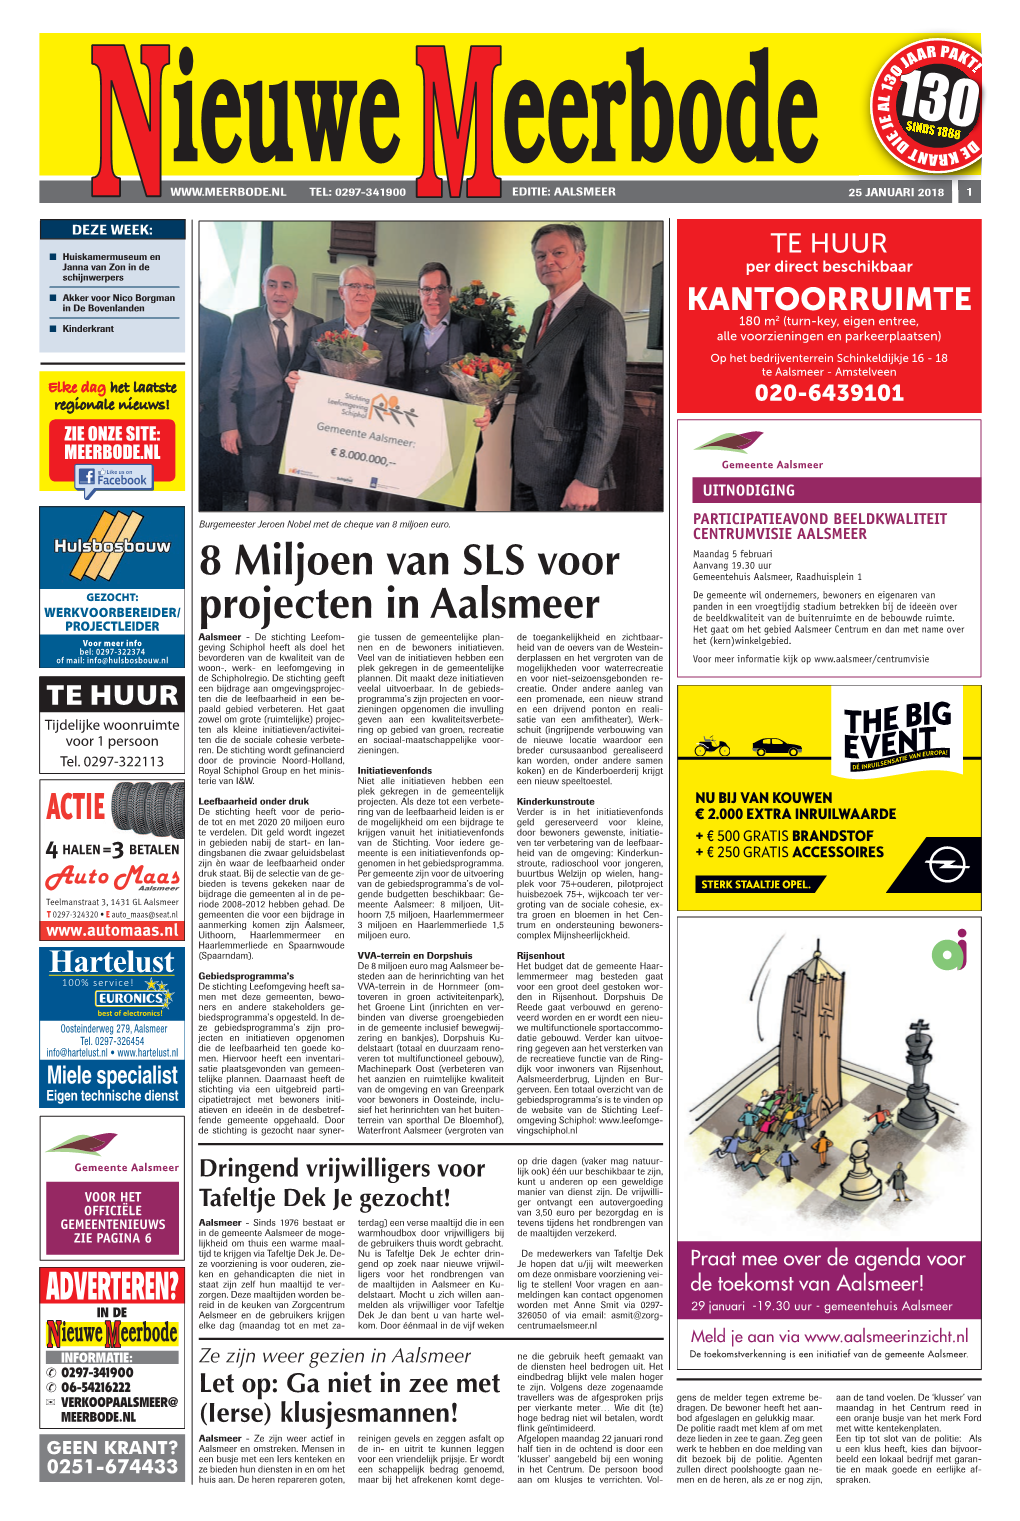 8 Miljoen Van SLS Voor Projecten in Aalsmeer